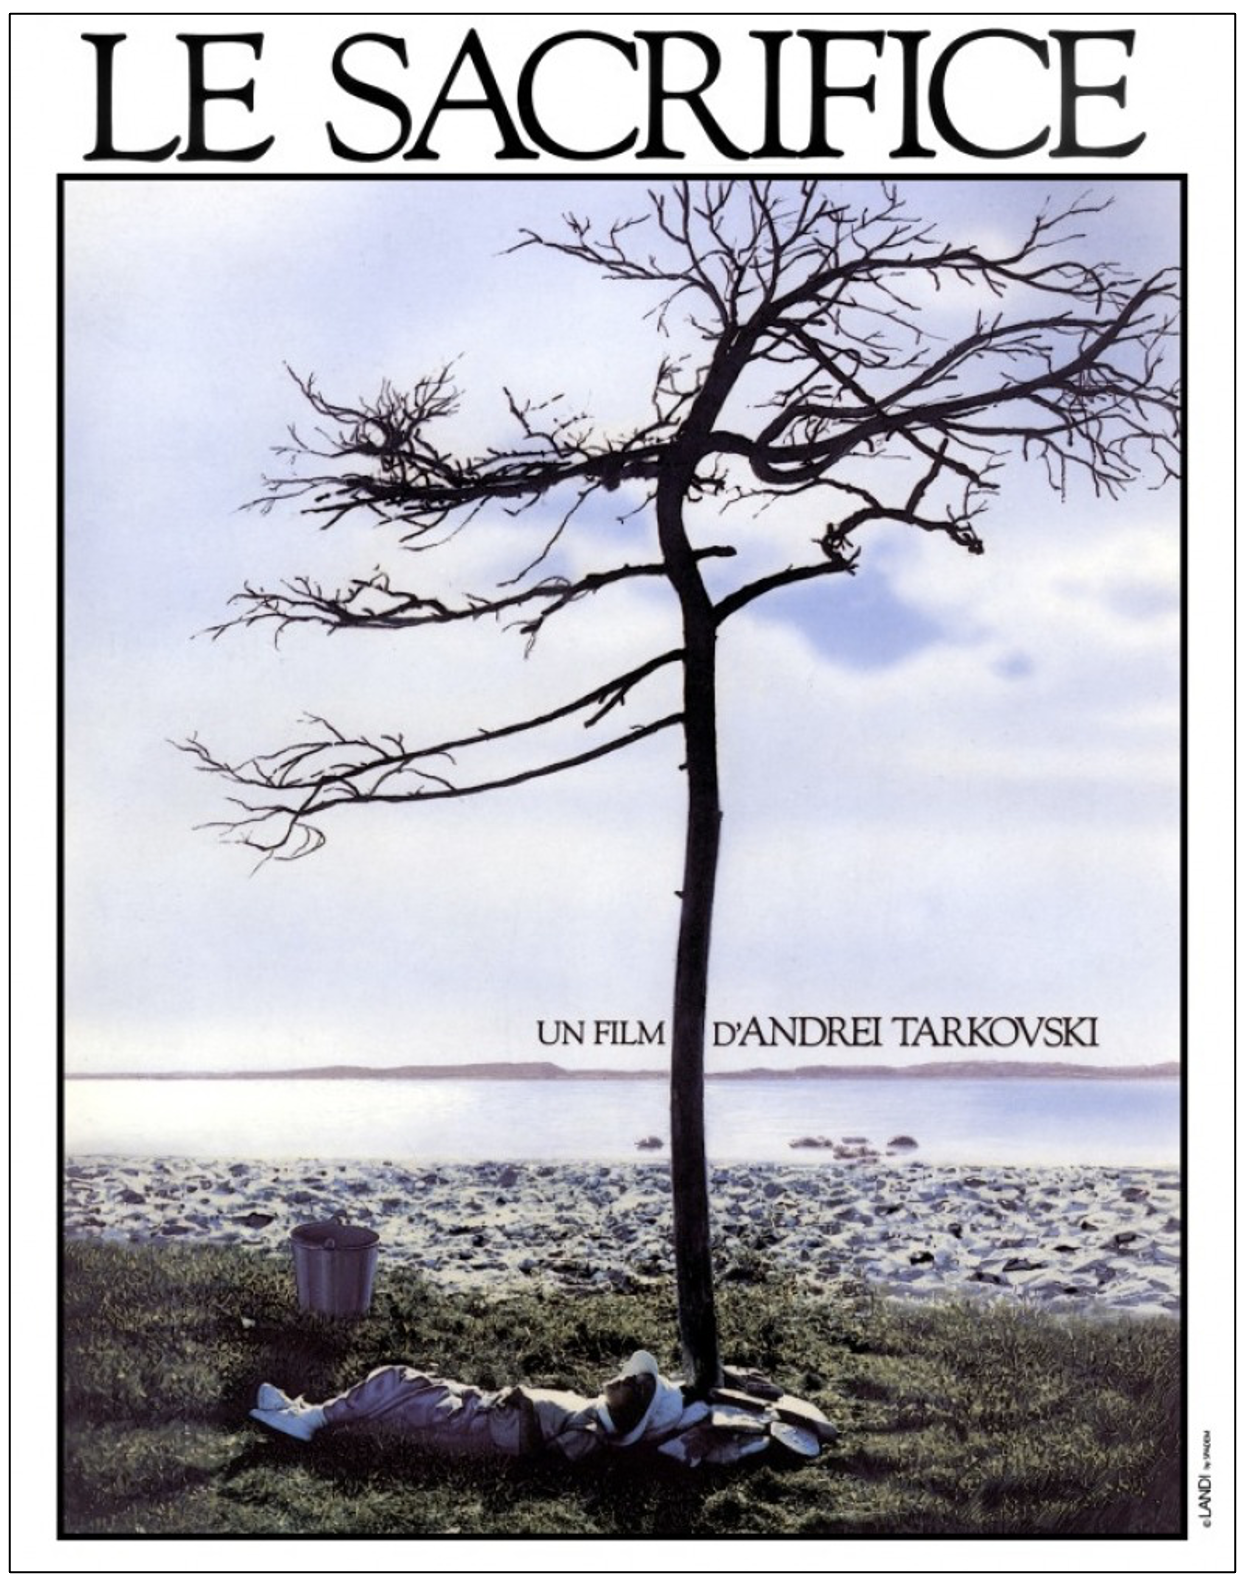 塔尔科夫斯基最后一部作品《牺牲》（1986）海报。徐皓峰认为塔尔科夫斯基最后两部作品都在拍“万物皆备于我”。